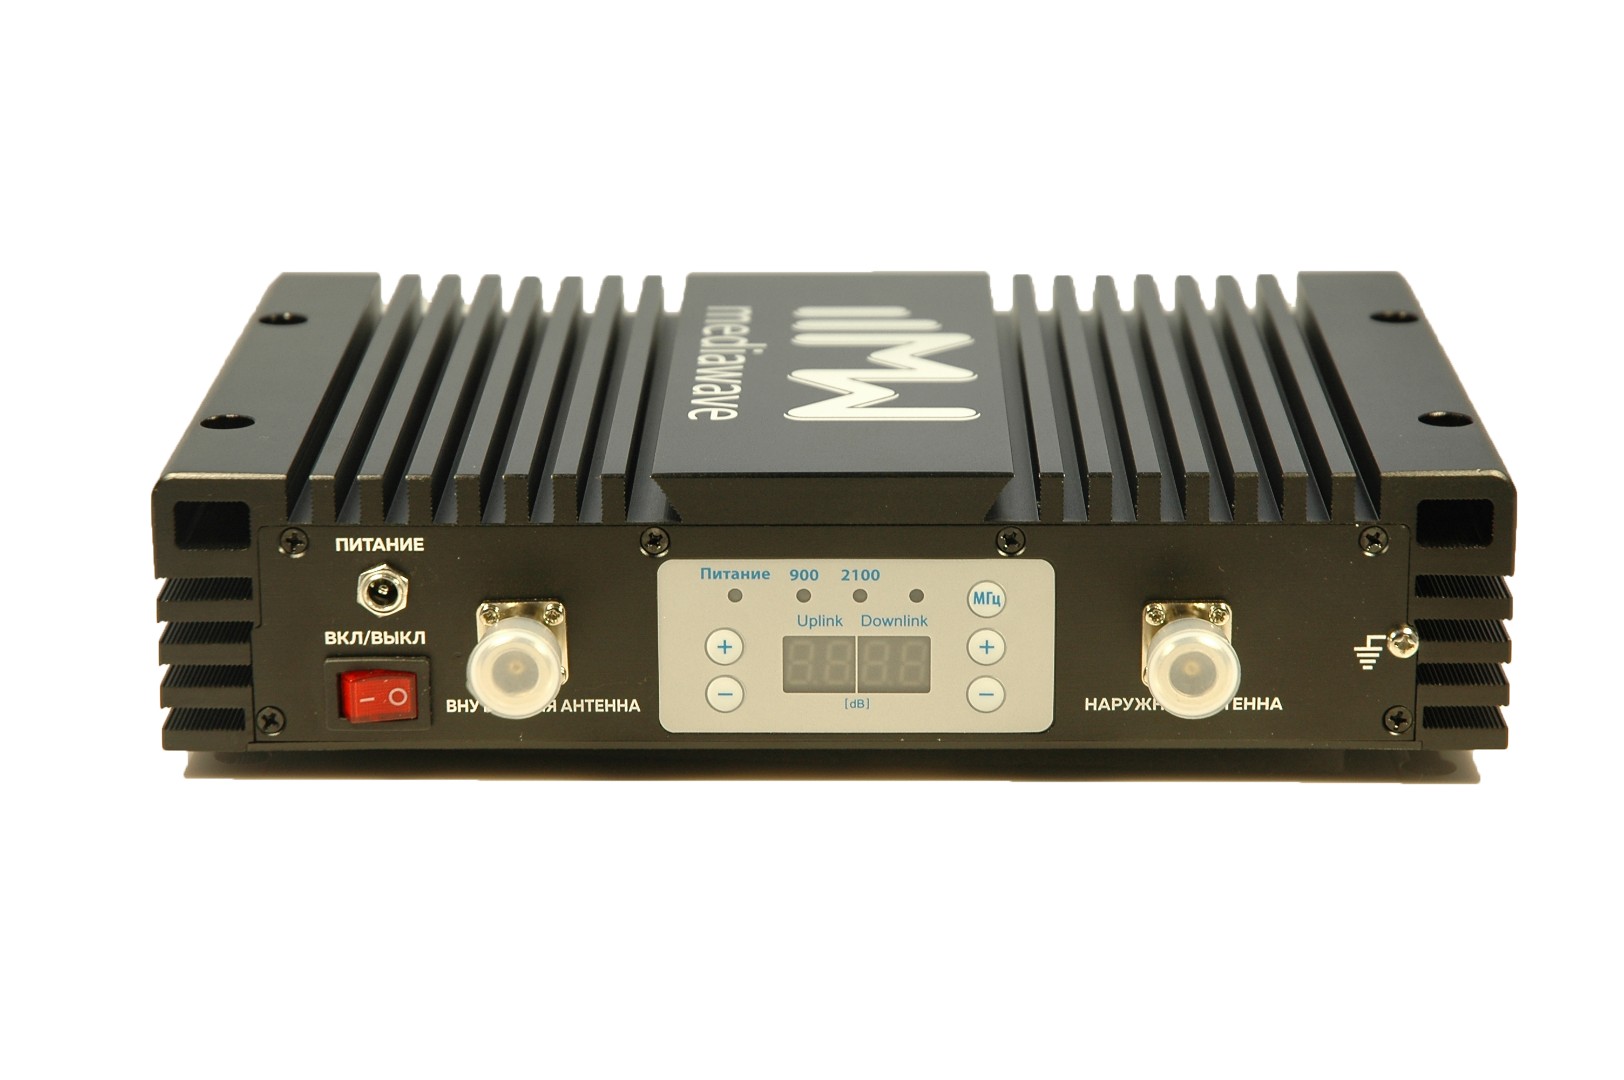 MWD-EGW-BM23: усилитель сотового сигнала (репитер) 900/2100 МГц, 75дБ/200мВт, площадь покрытия до 20